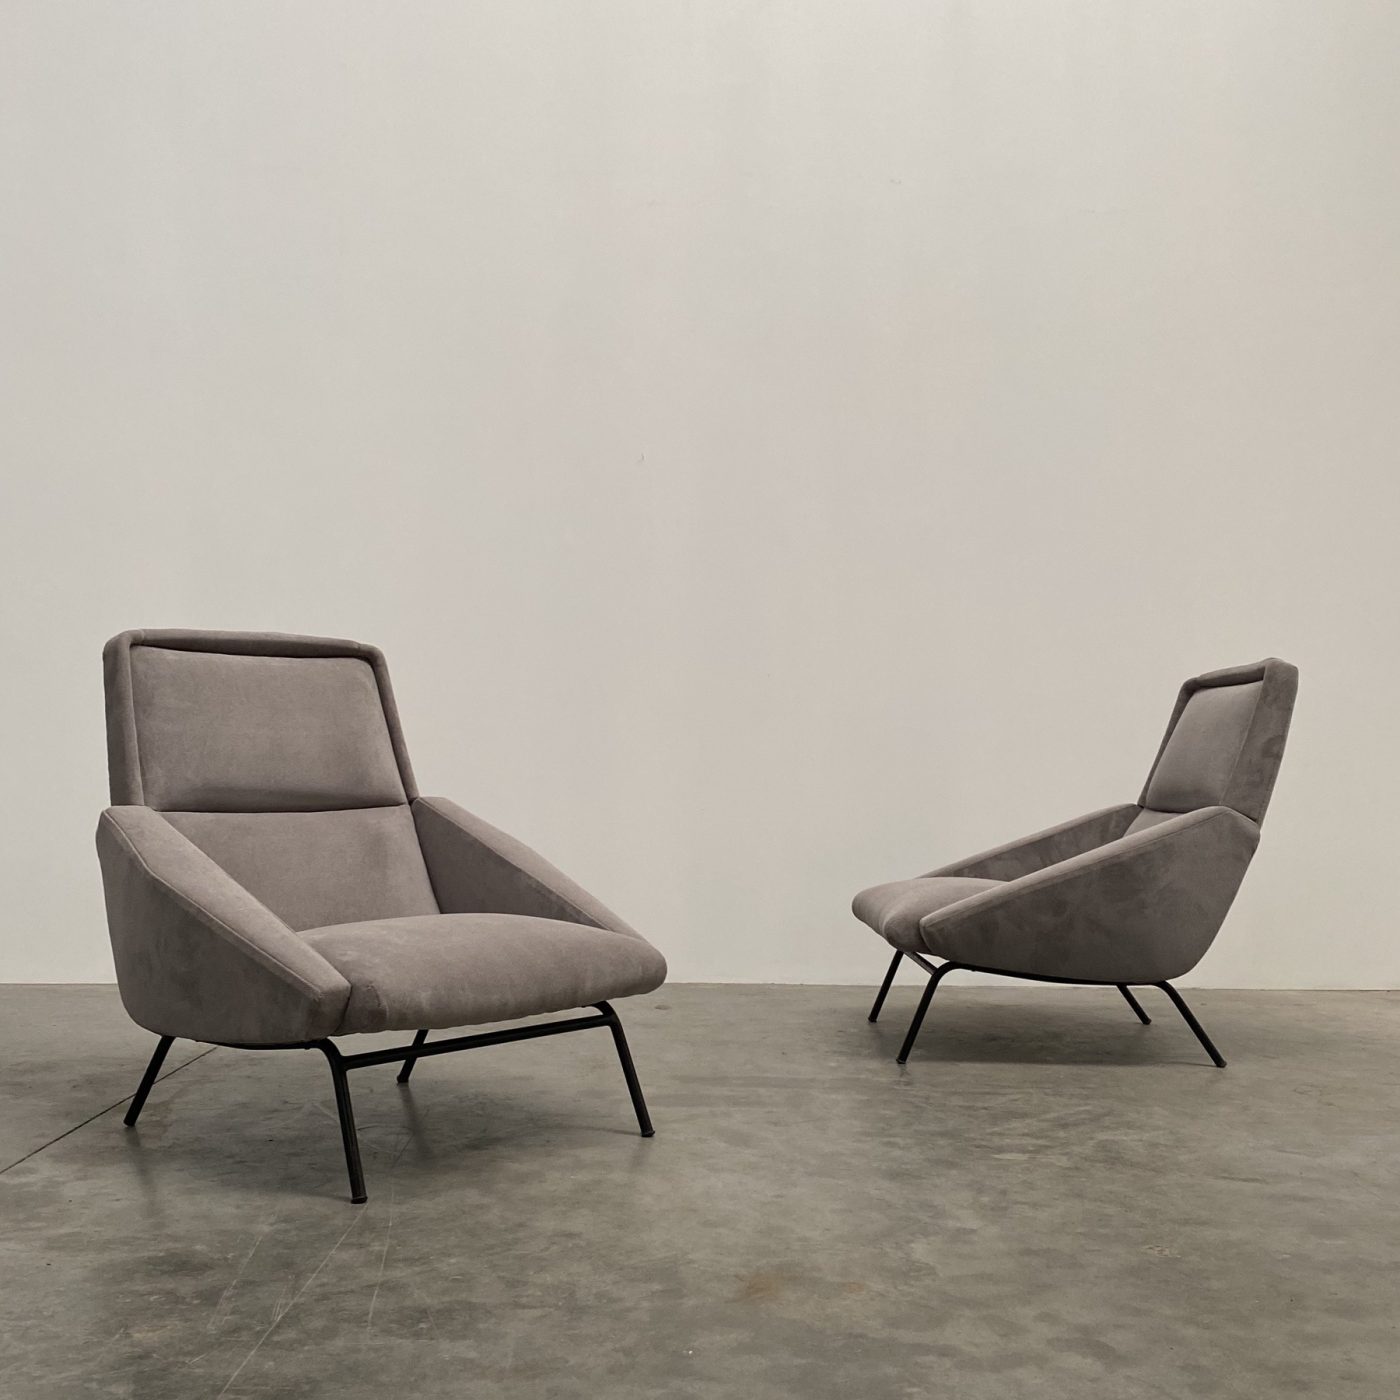 objet-vagabond-guermonprez-armchairs0005